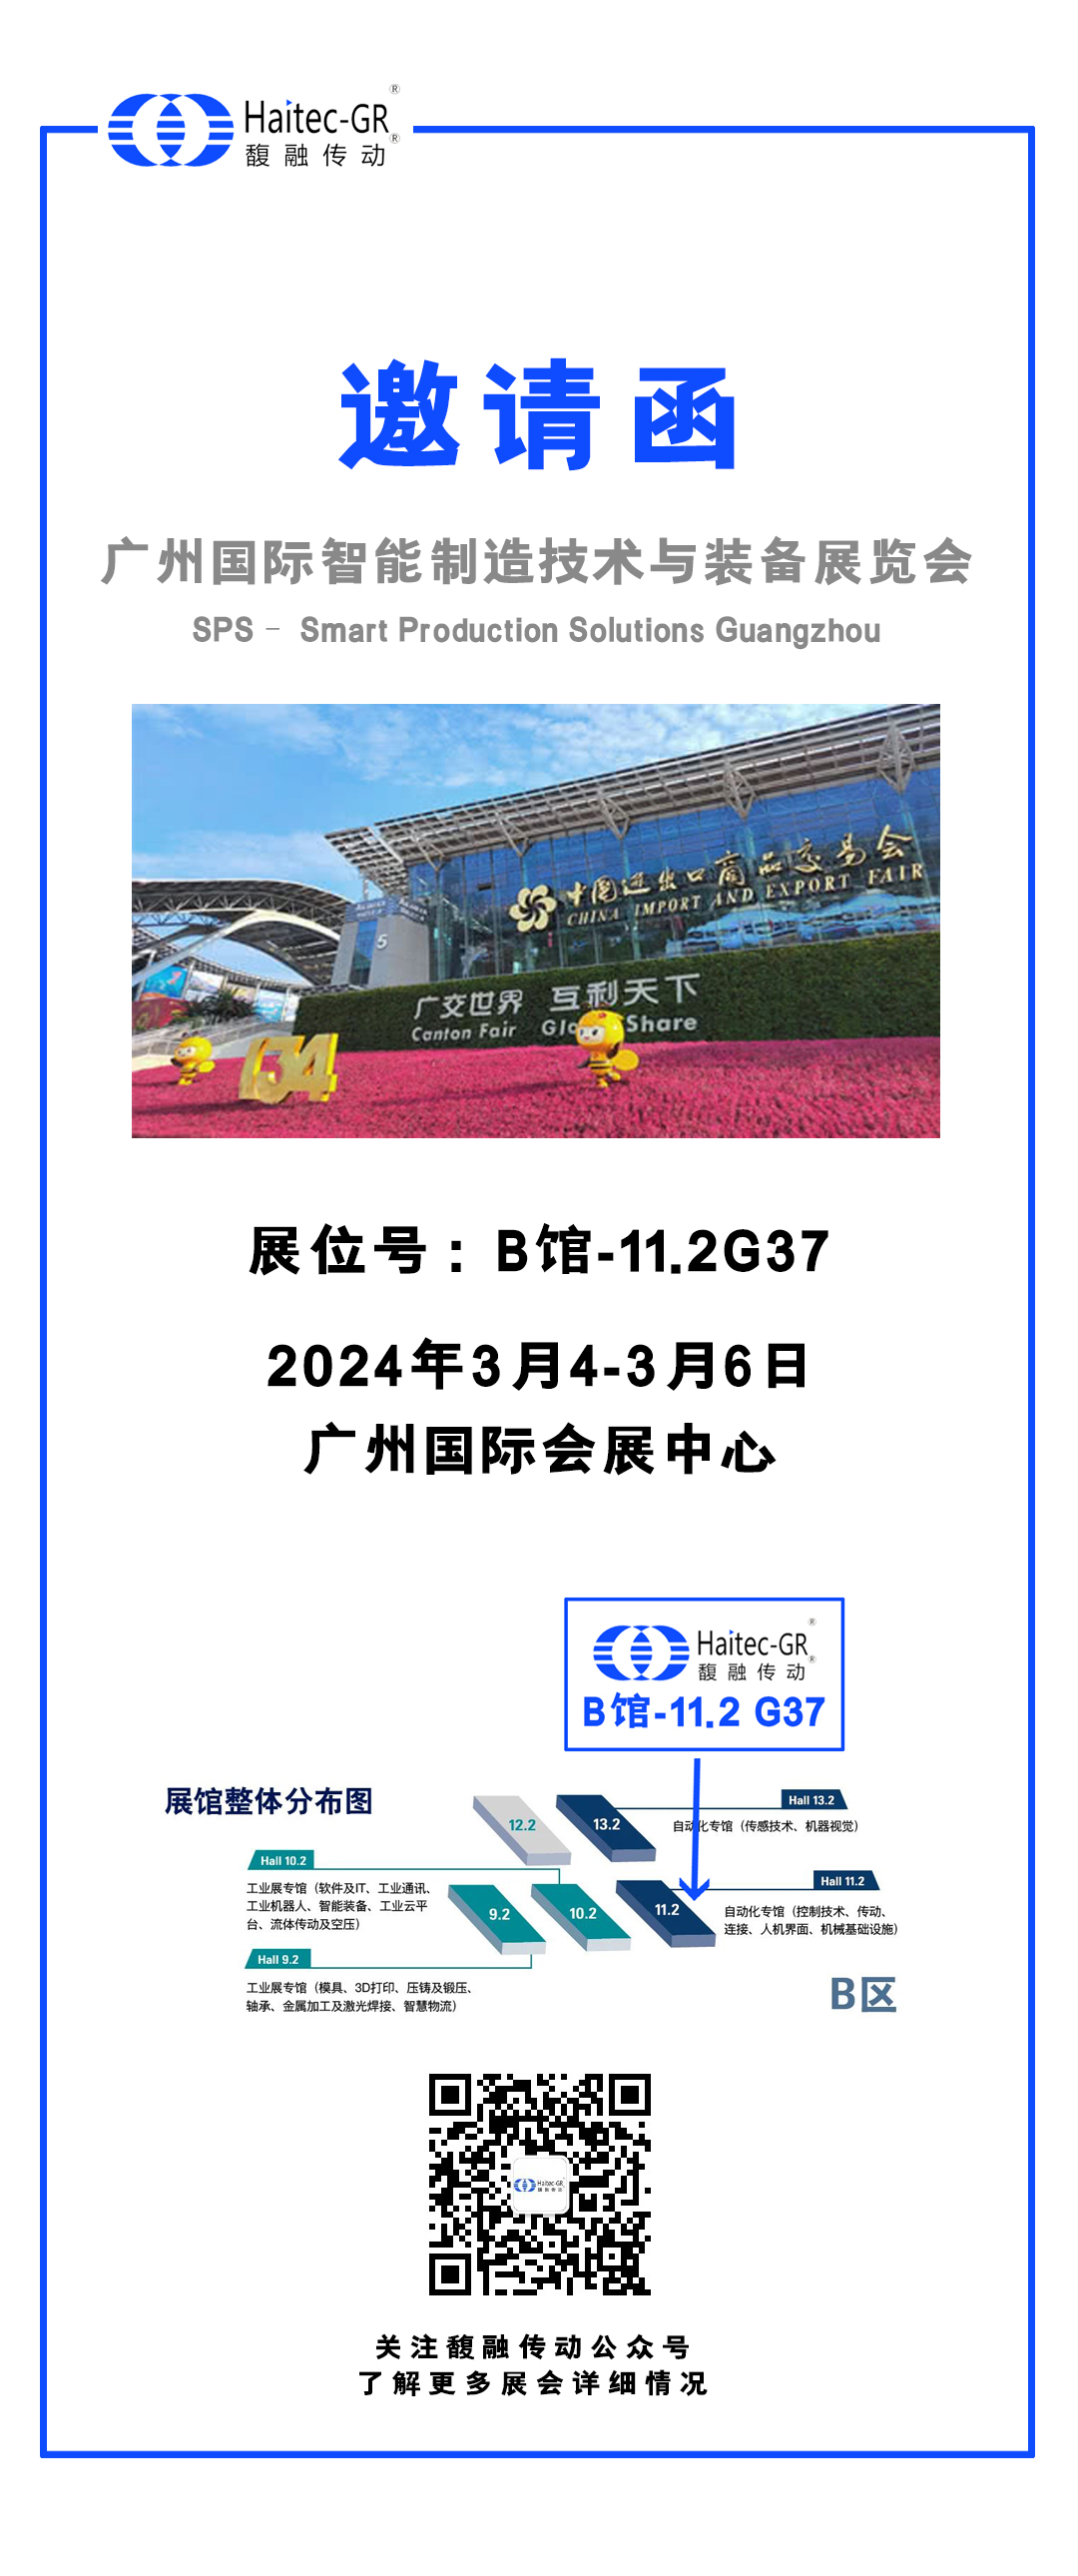 广州国际智能制造技术及装备展览会.jpg